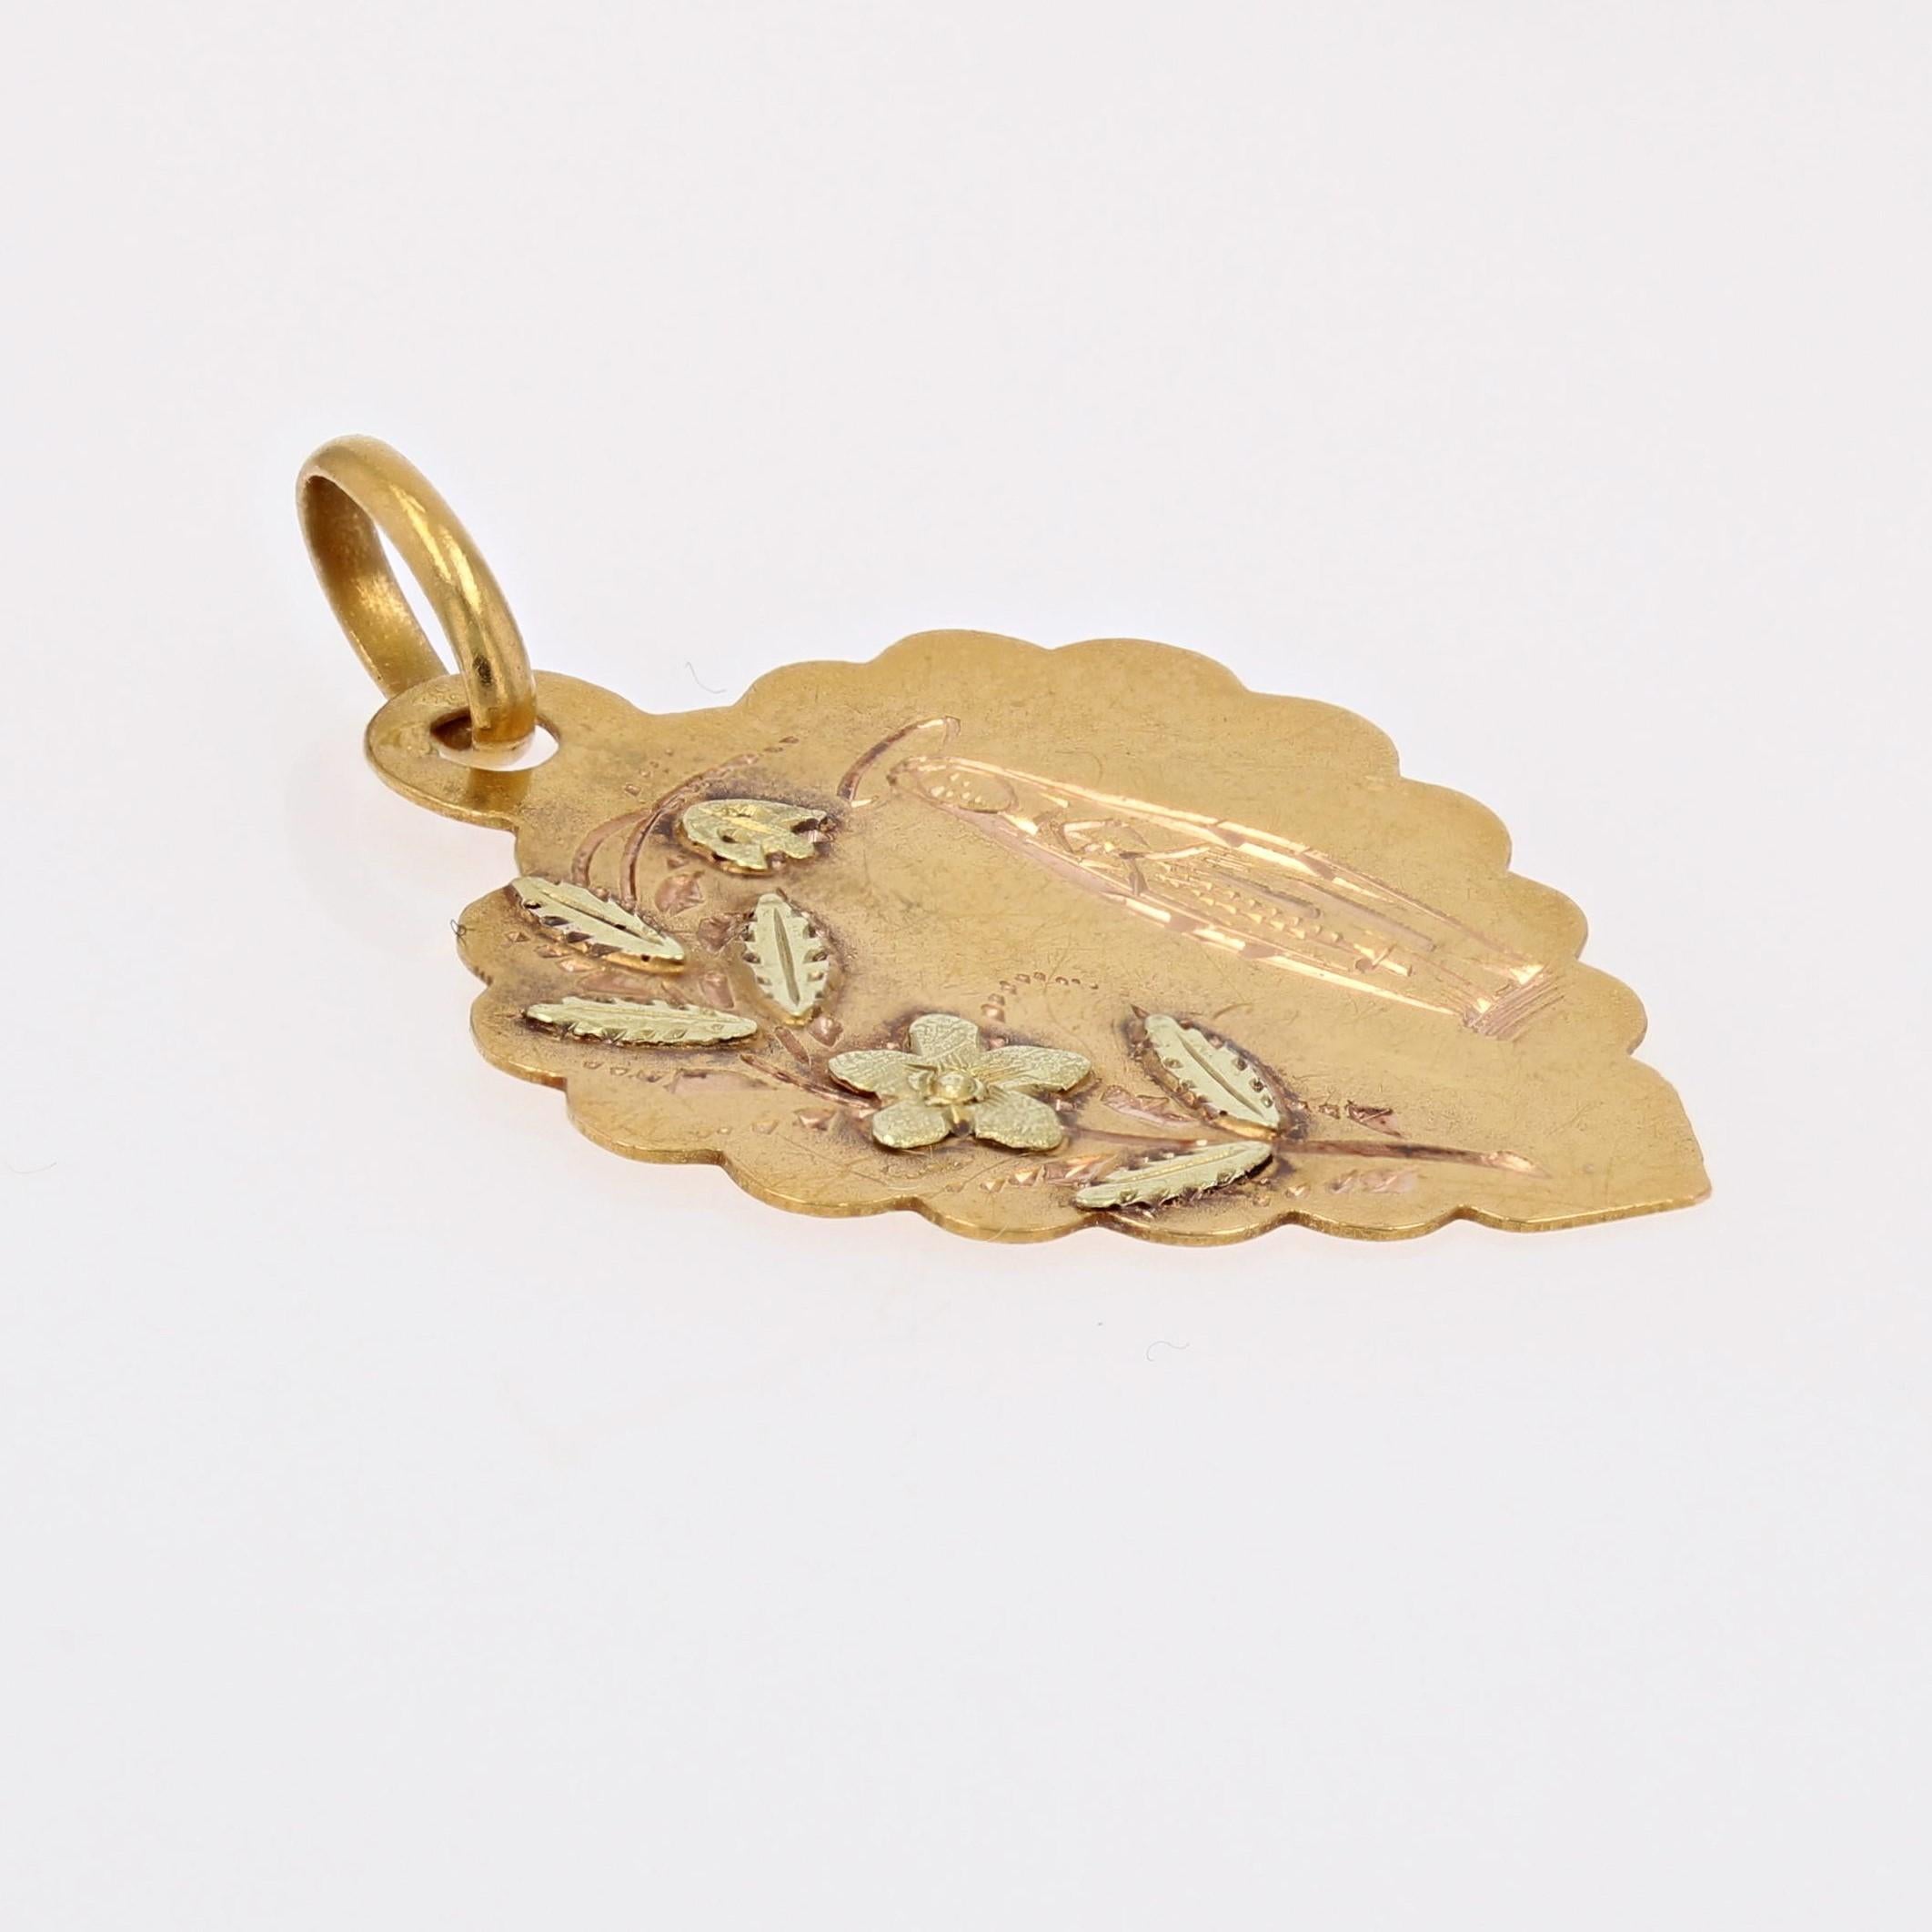 Medaille aus 18 Karat Gelb- und Grüngold, Adlerkopfpunze.
Diese antike Medaille in Herzform stellt das Heiligtum 